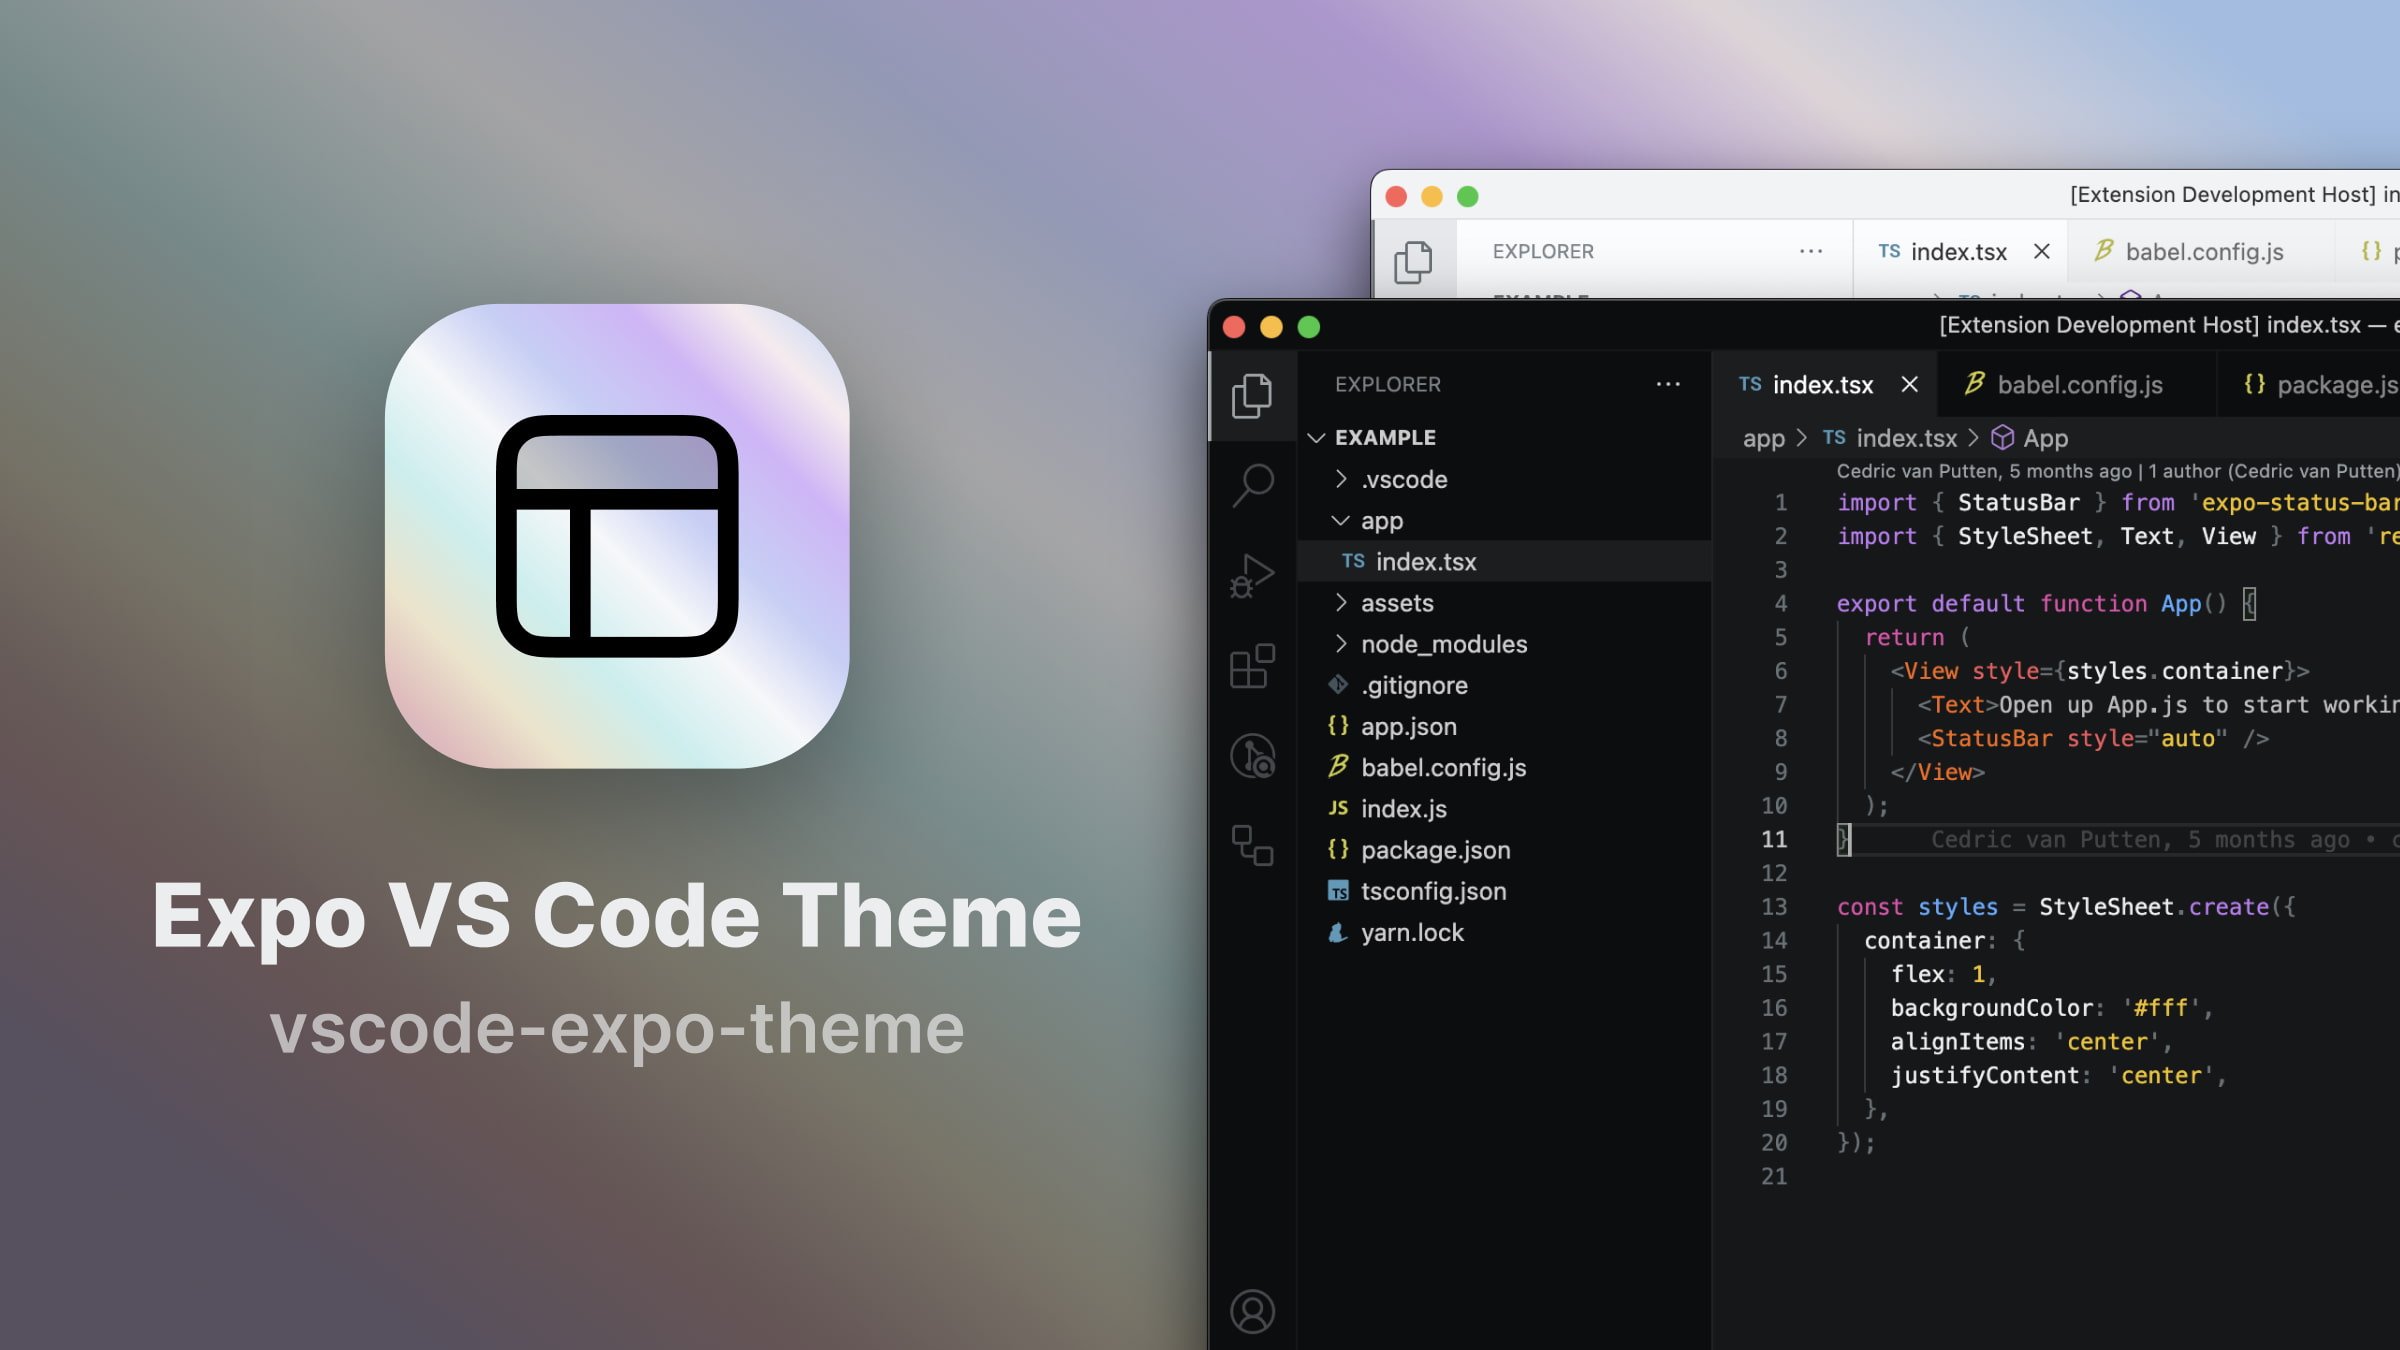 Expo VS Code theme